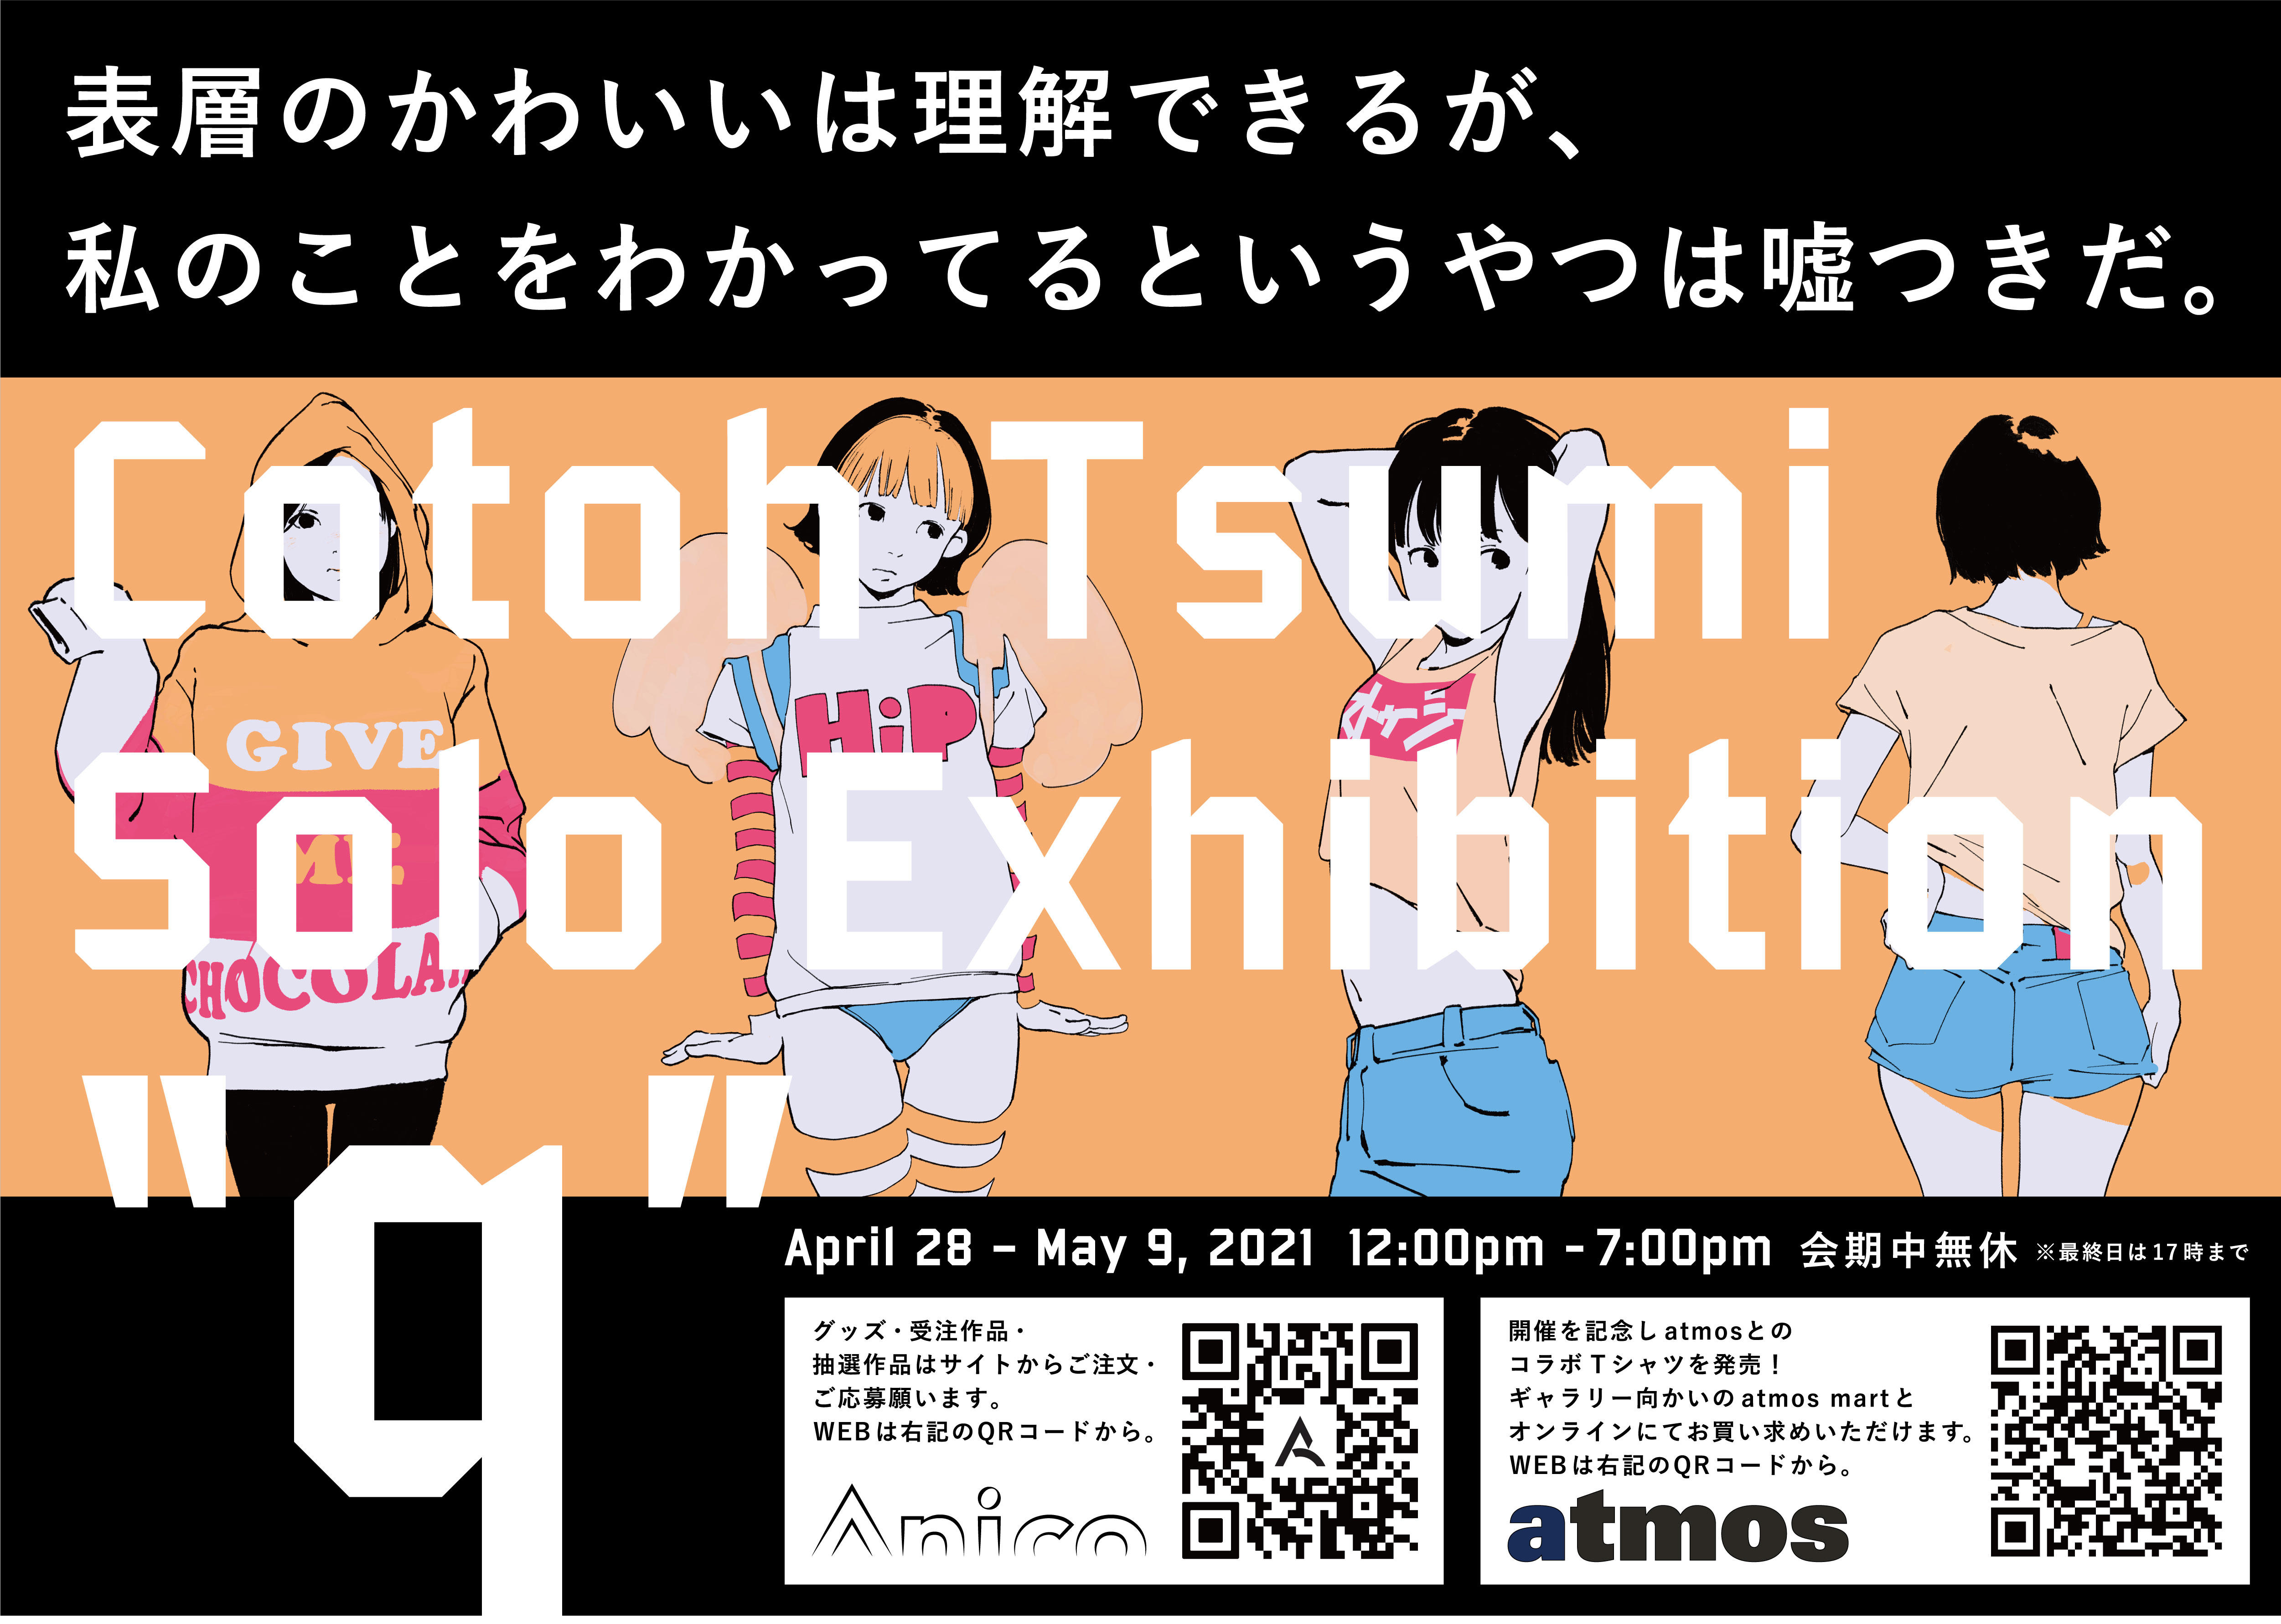 【期間限定送料無料】 Anicoremix 古塔つみSolo “q” Exhibition キャラクターグッズ